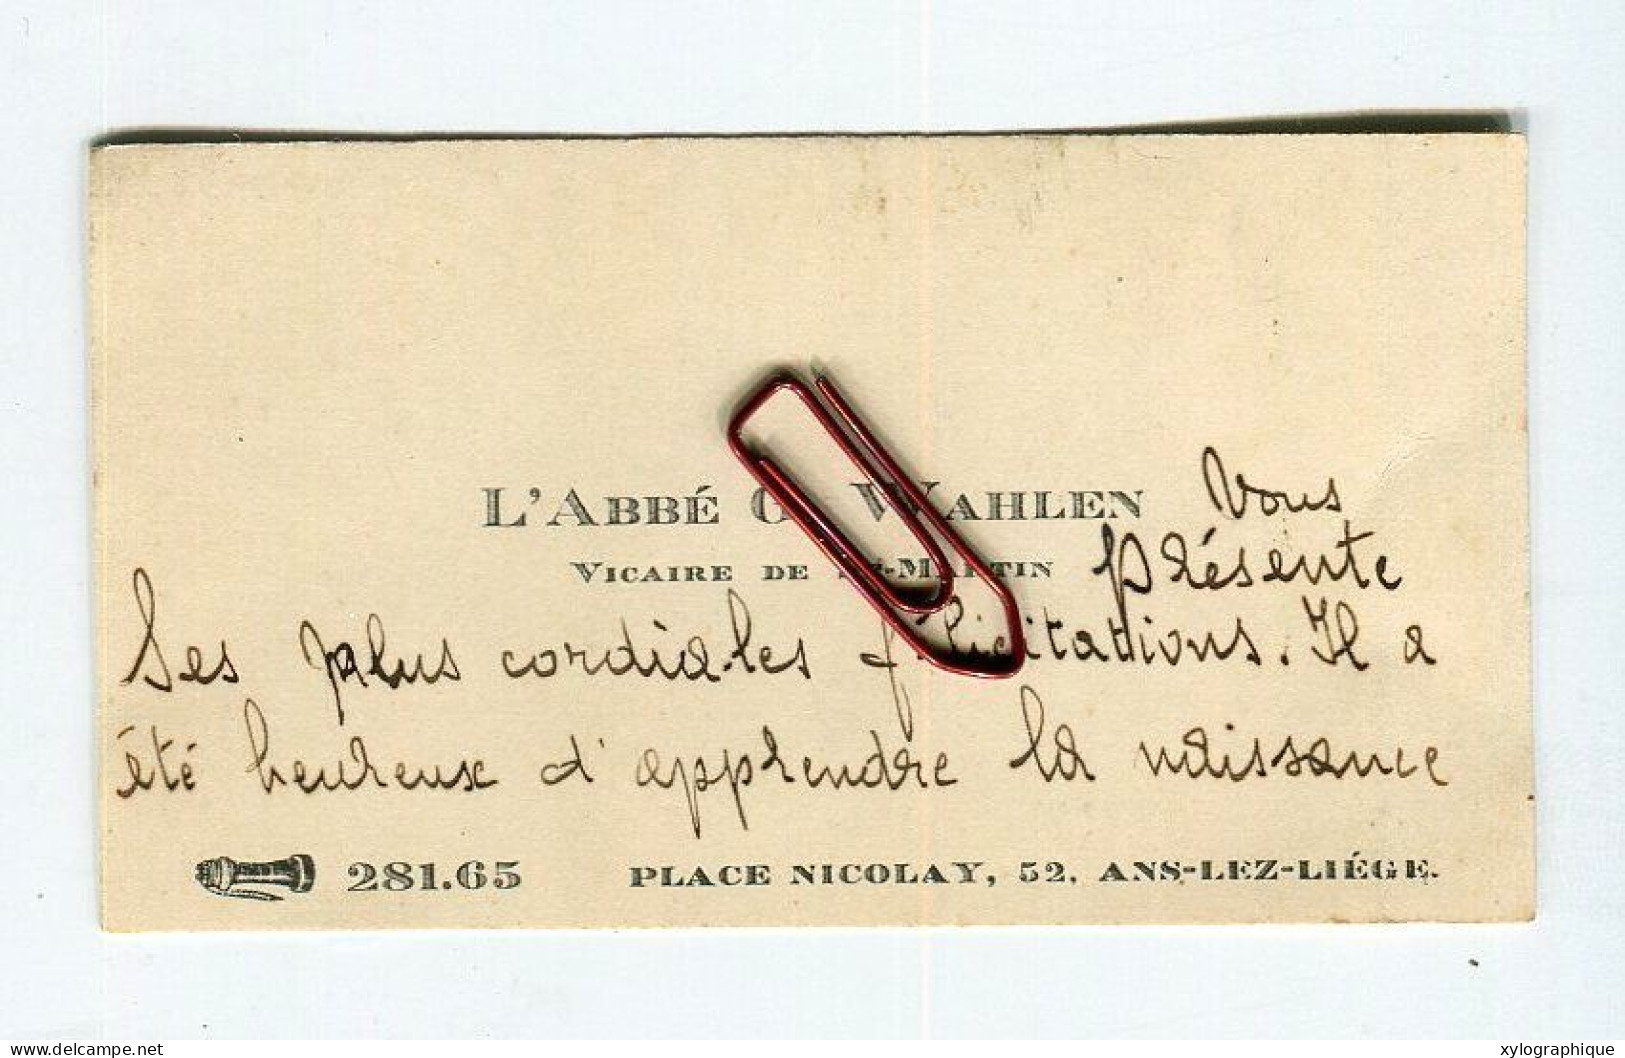 ANS (Liège) - Carte De Visite 1932, Abbé G. Wahlen Vicaire Saint-Martin Place Nicolay, à Famille Gérardy Warland - Visiting Cards